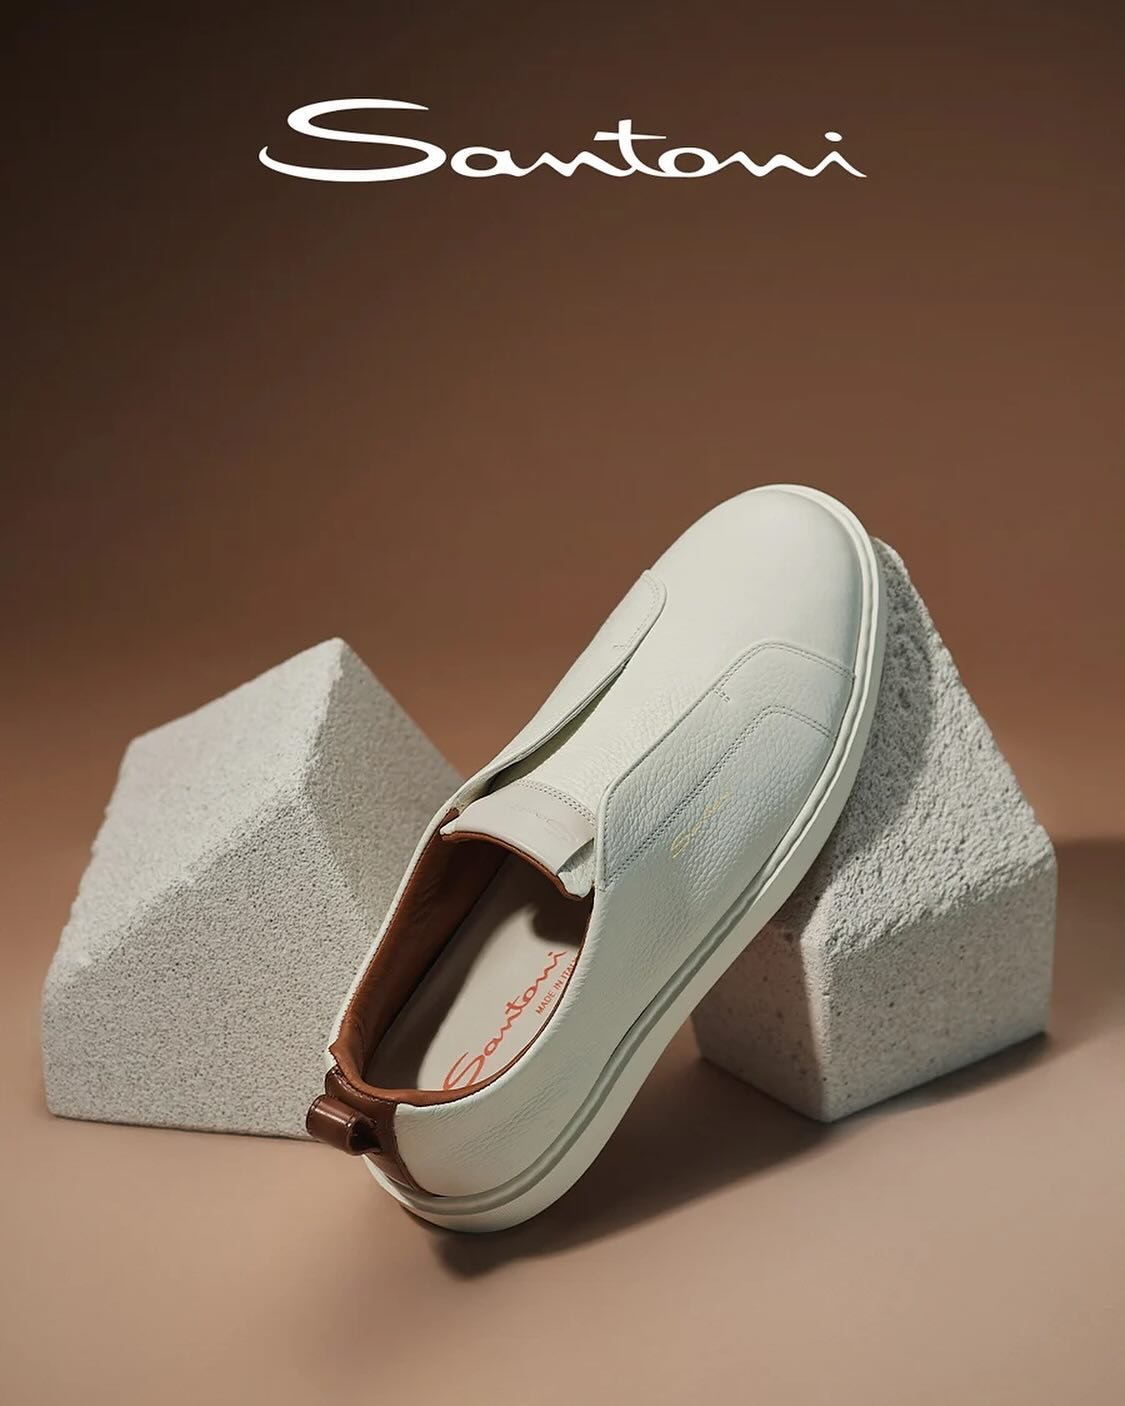 Indisputable quality and style 👌

@santoniofficial masters casual elegance and great comfort!

Try to choose only one pair at ➡️ teneroshop.me
_________

Neprikosnoveni kvalitet i stil 👌

#Santoni je usavr&scaron;io ležernu eleganciju uz vrhunsku u